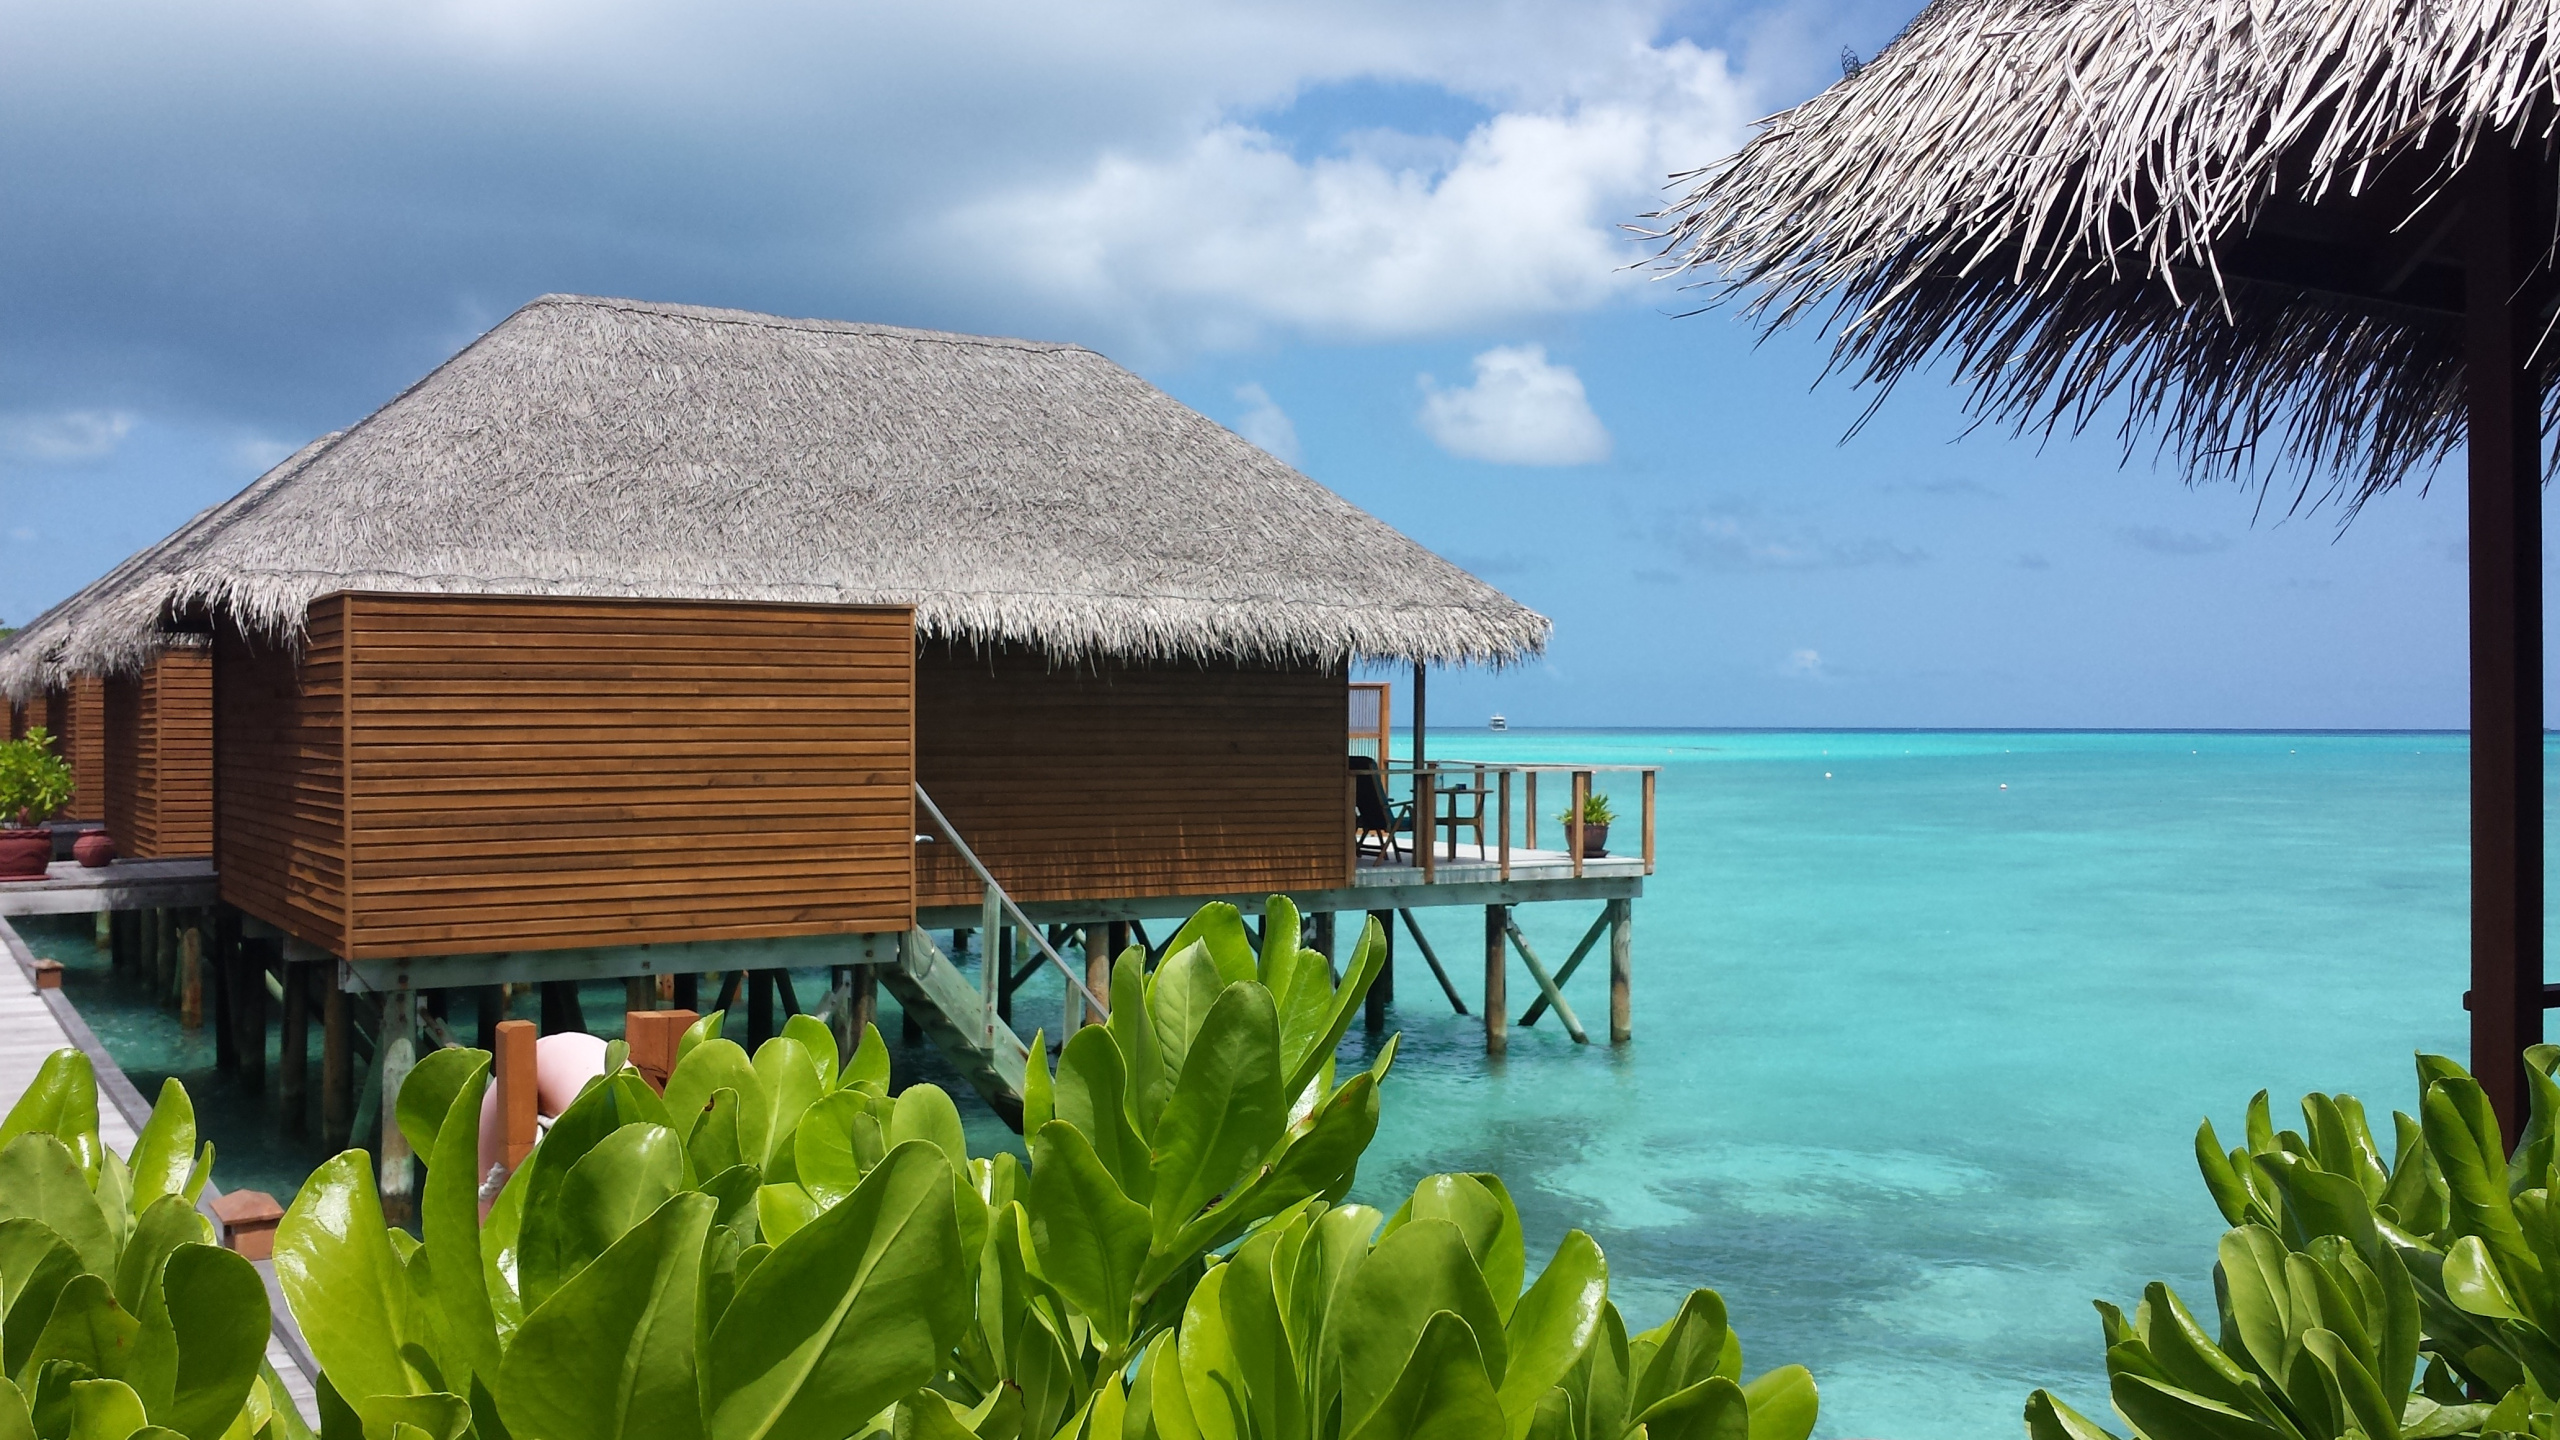 马尔代夫, 小屋, 度假, 度假村, 大海 壁纸 2560x1440 允许